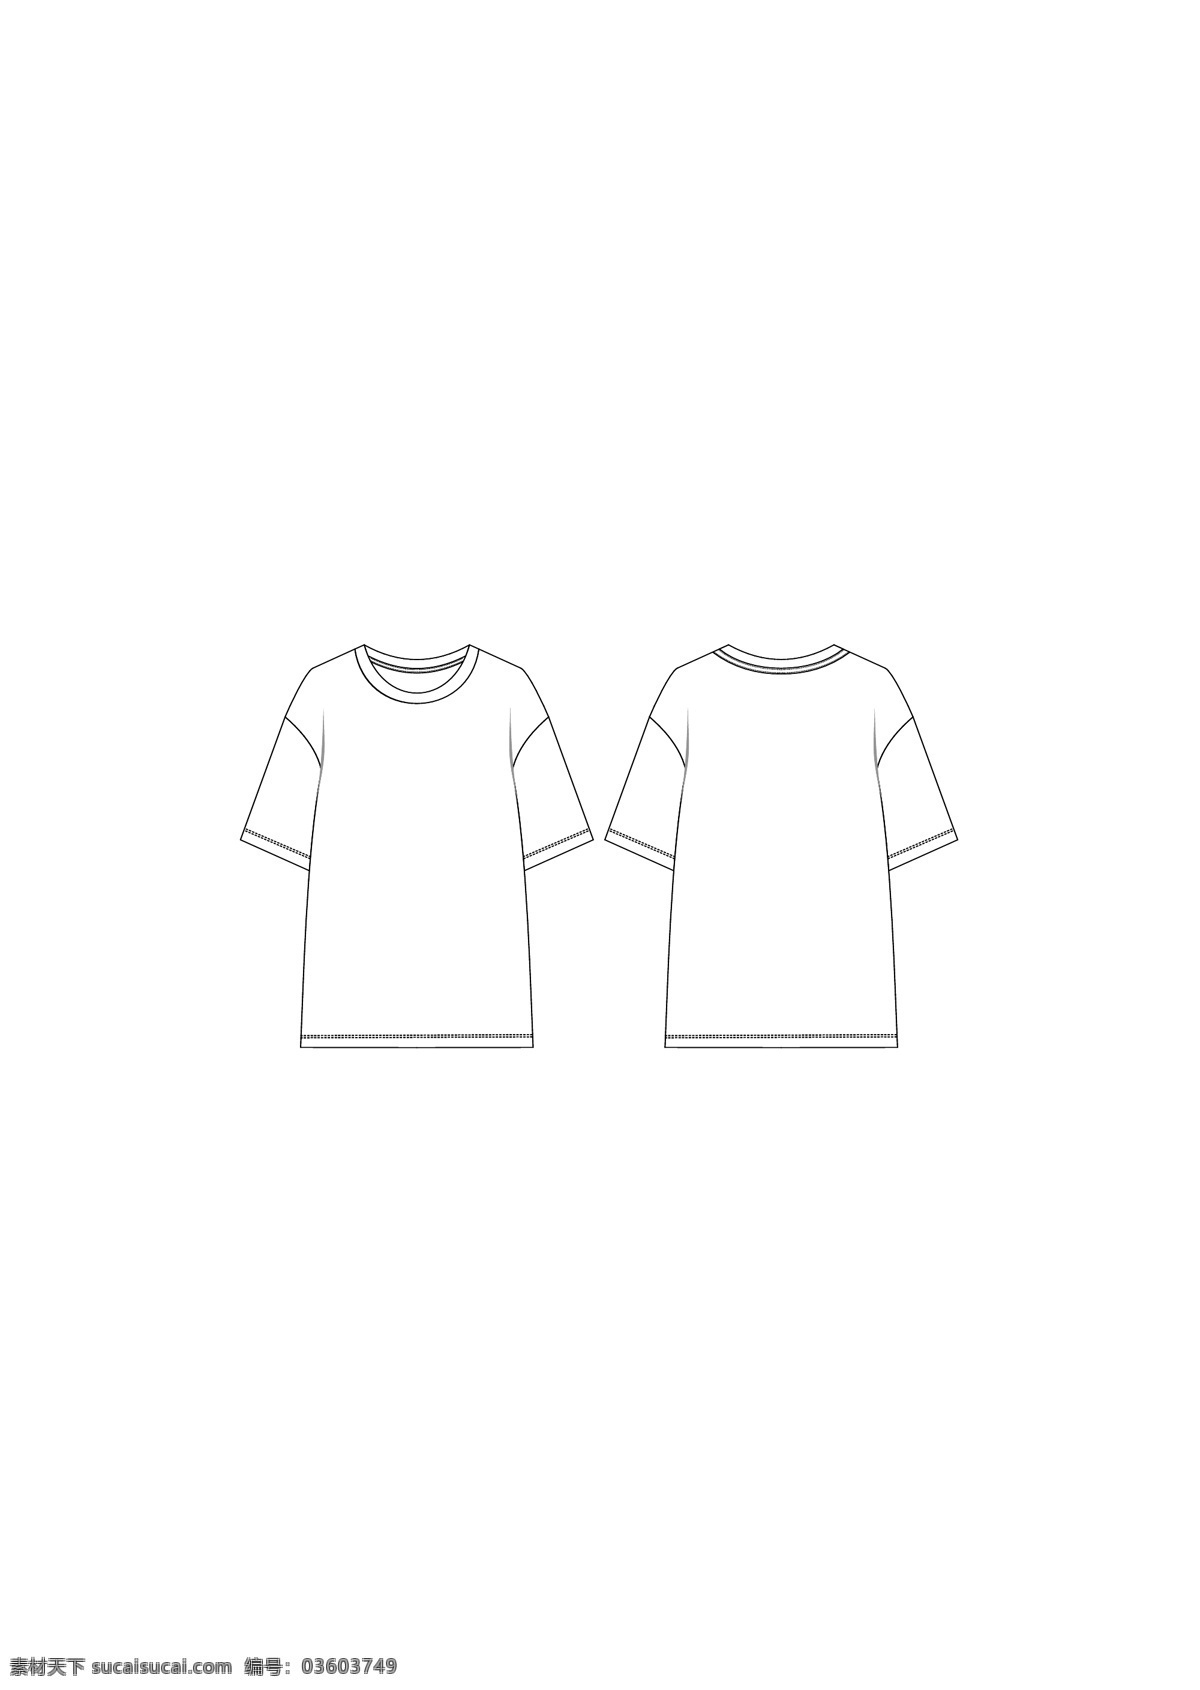 女装 夏季 落 肩 袖 短袖 t 恤 款式 图 落肩袖 t恤 款式图 模板 vi设计